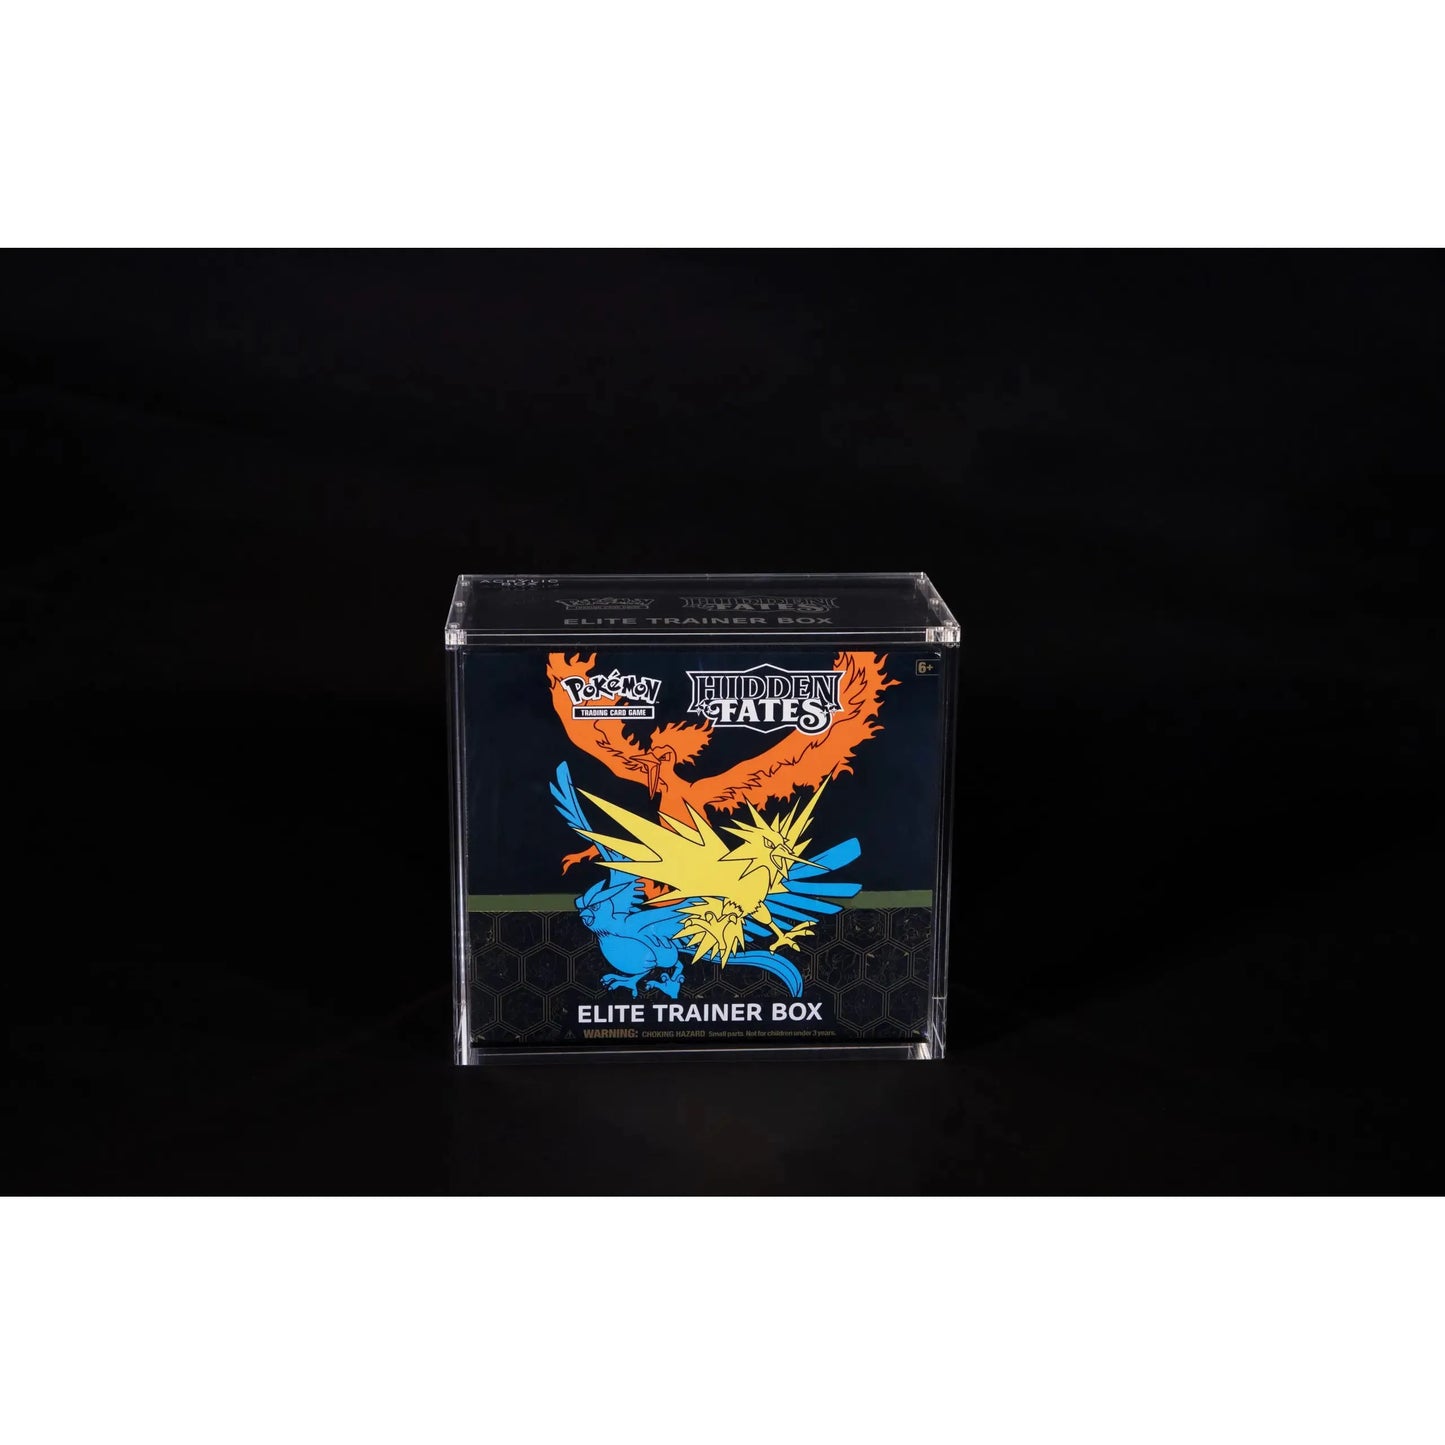 Premium akrylový ochranný box pre Pokémon Elite Trainer Box